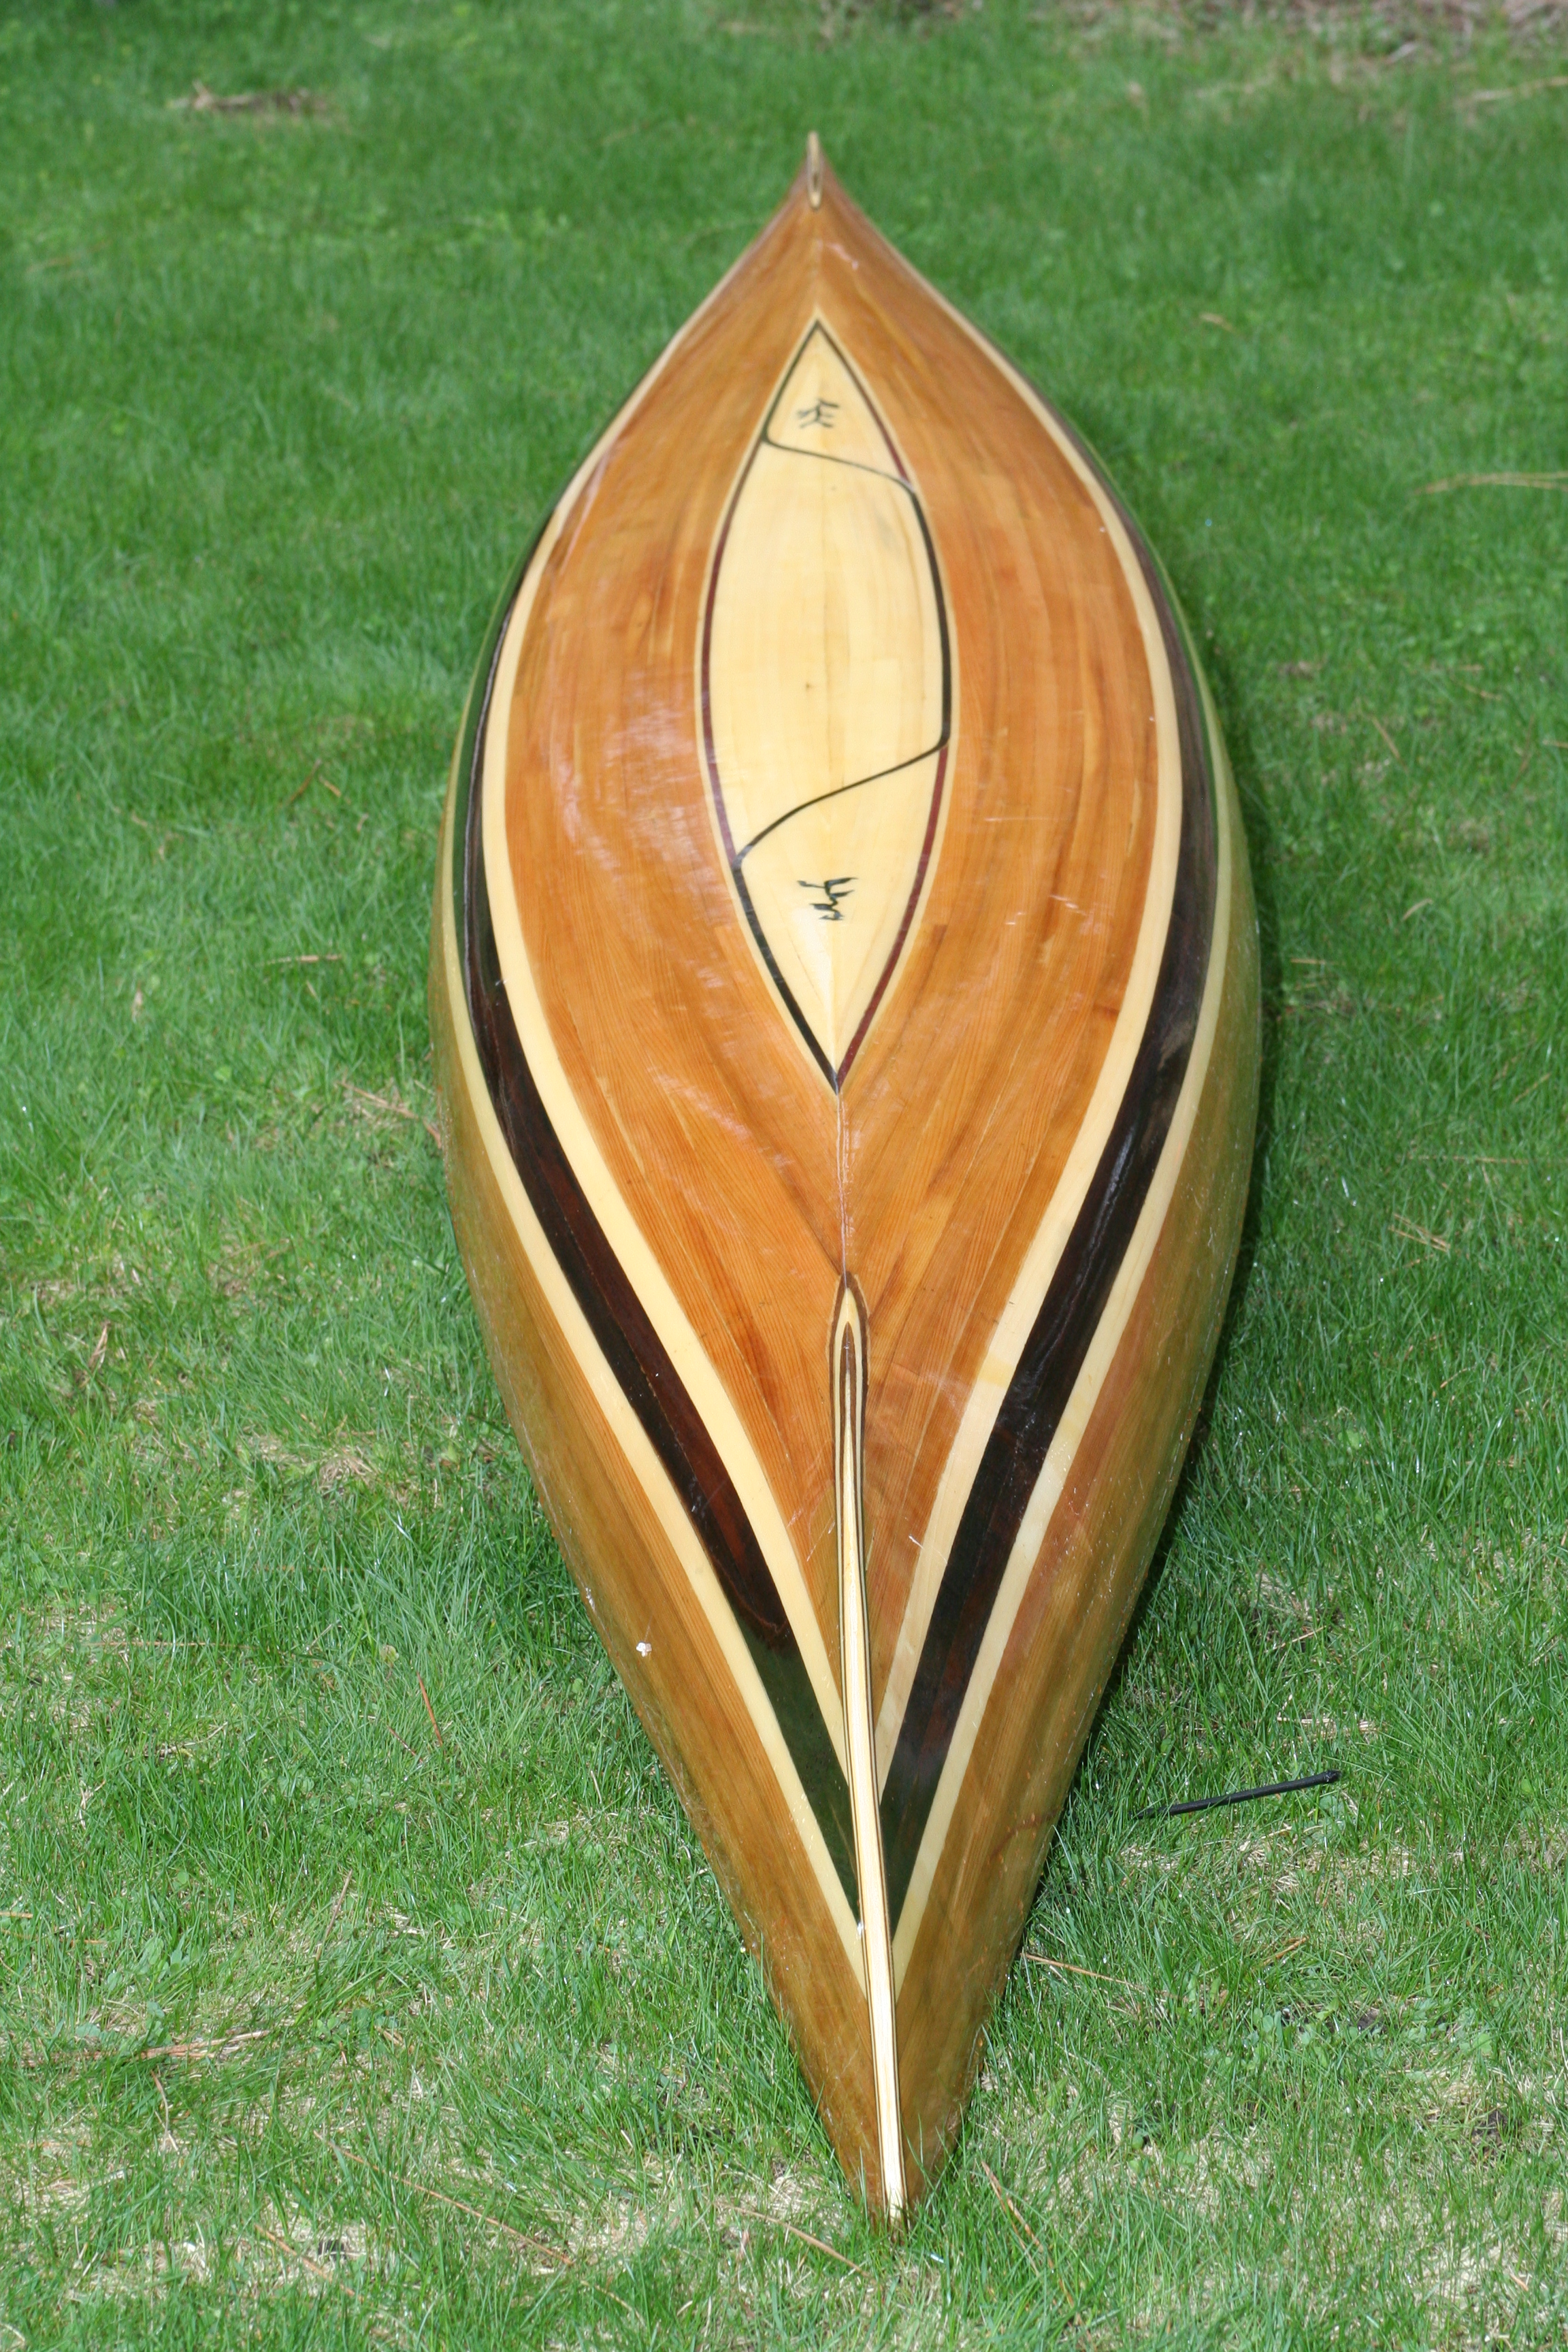 Strip+Plank+Kayak wood boat cedar strip kayak canoe,cedar strip kayaks ...